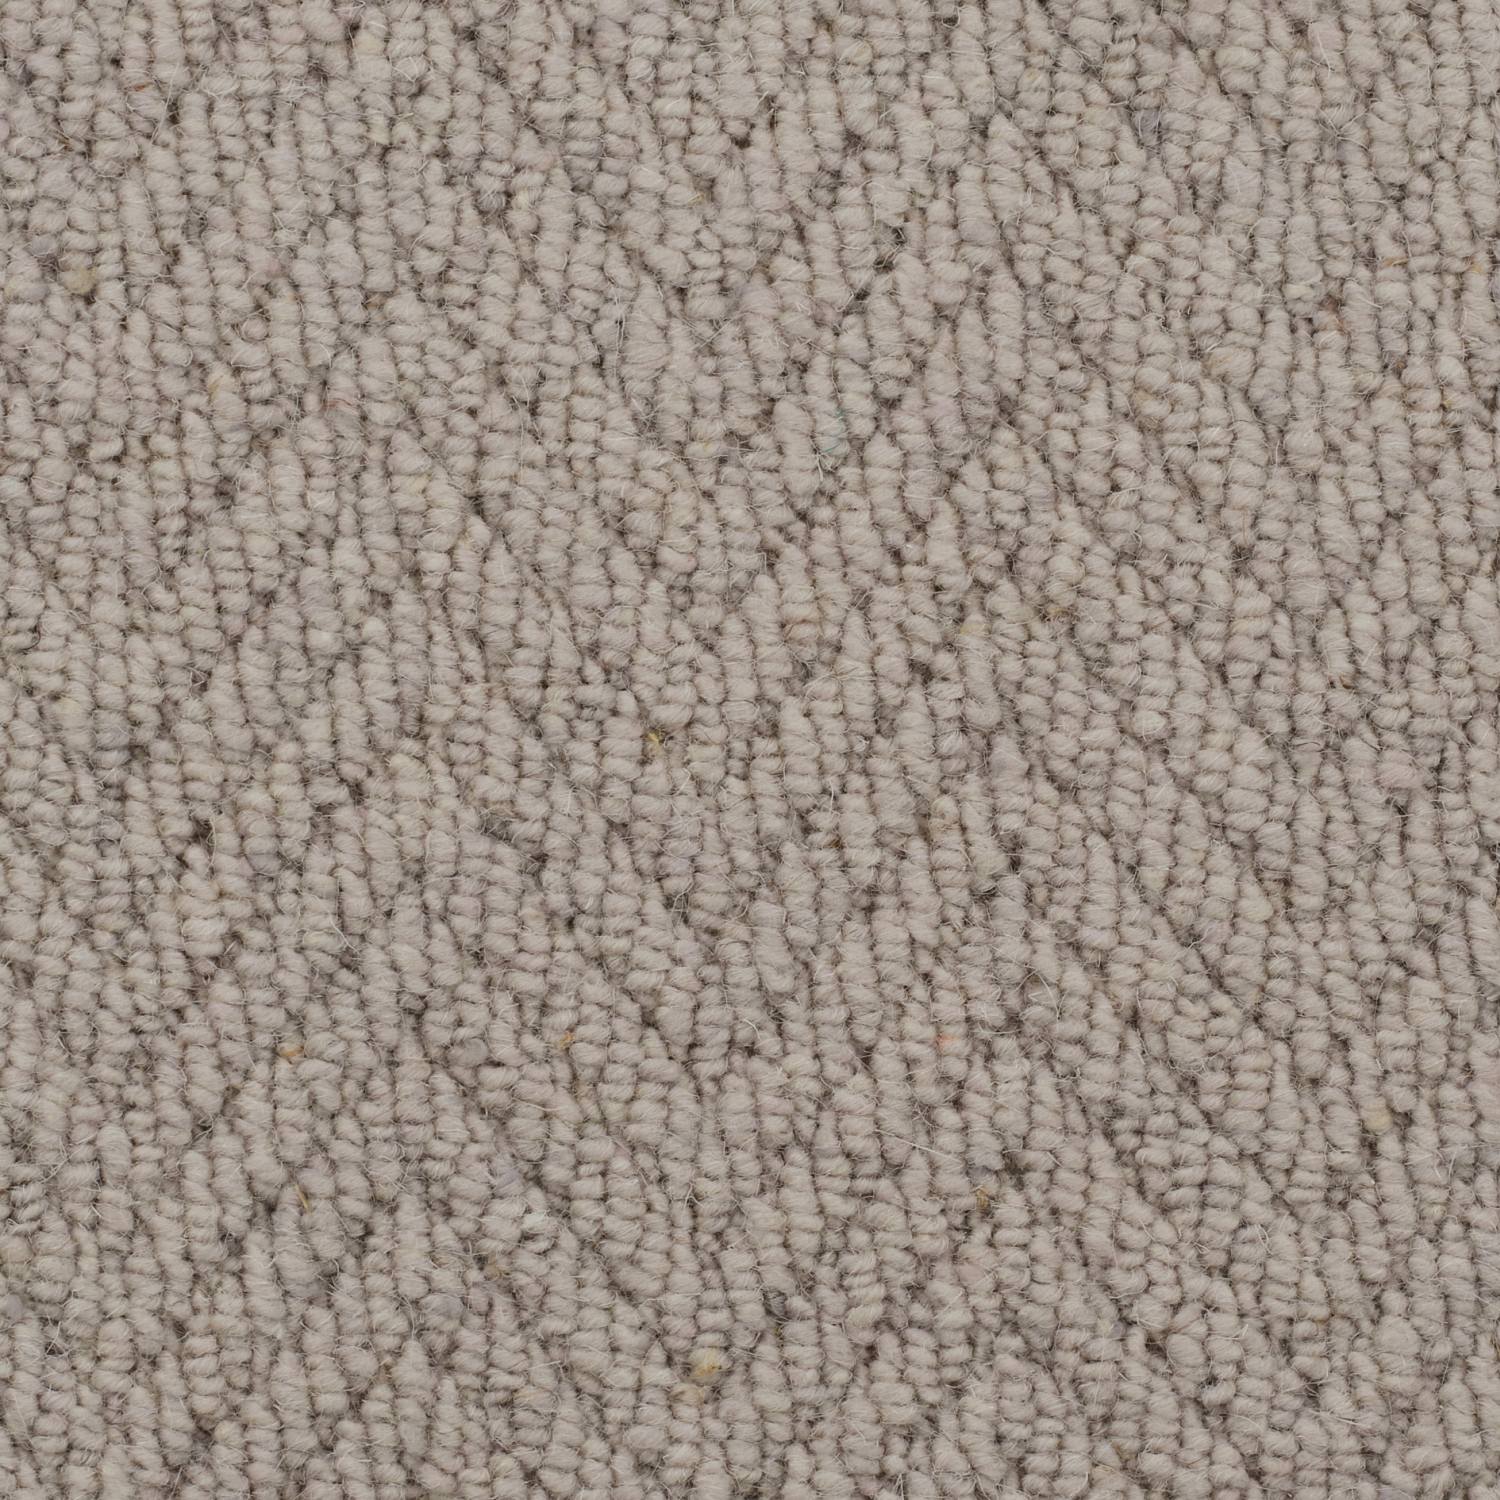 Natural Origins Loop Wool Carpet - Purbeck Herringbone